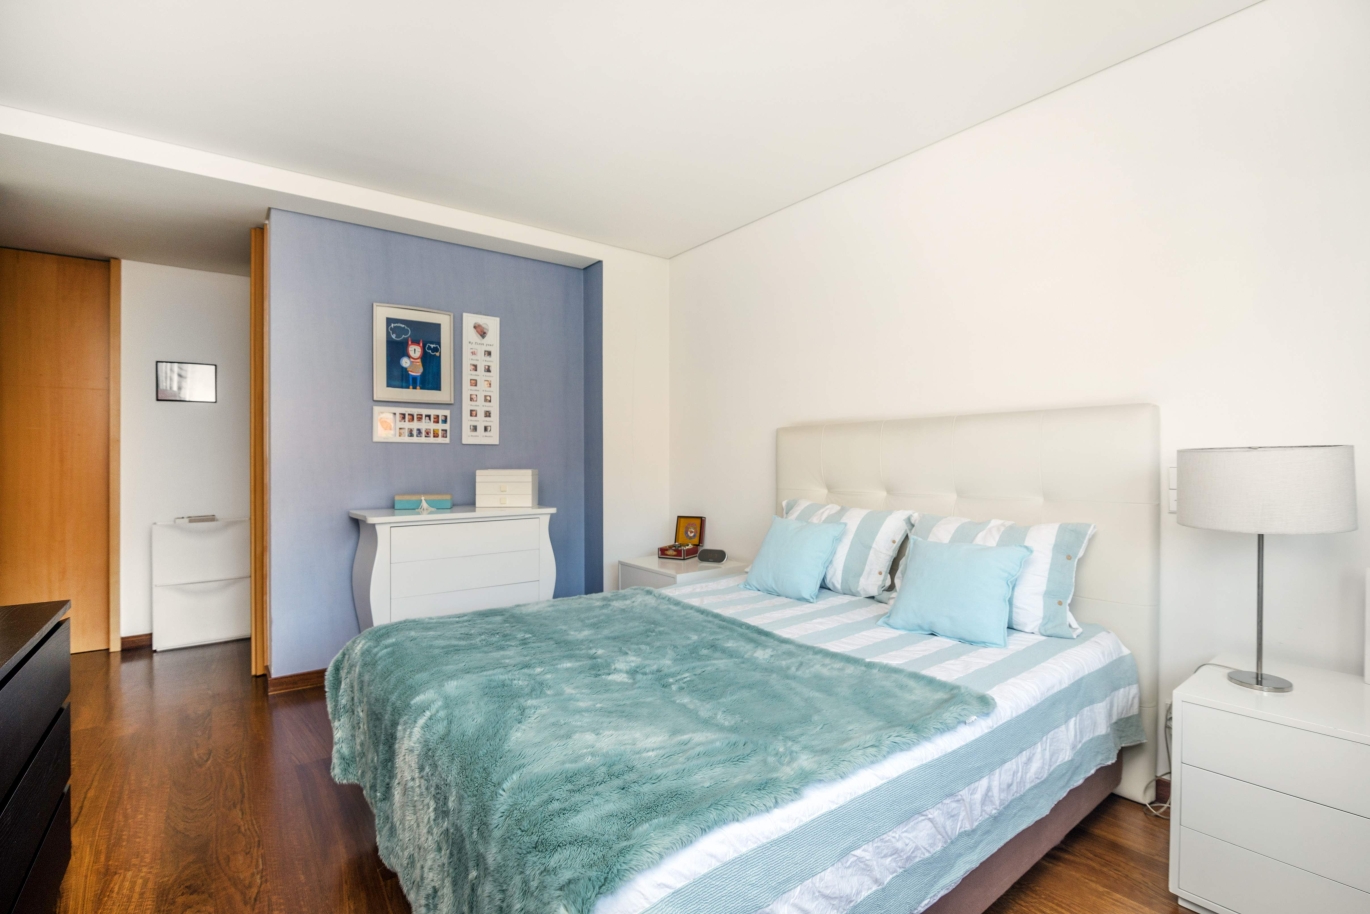 Venda apartamento em condomínio privado com vistas rio, Porto, Portugal_121040